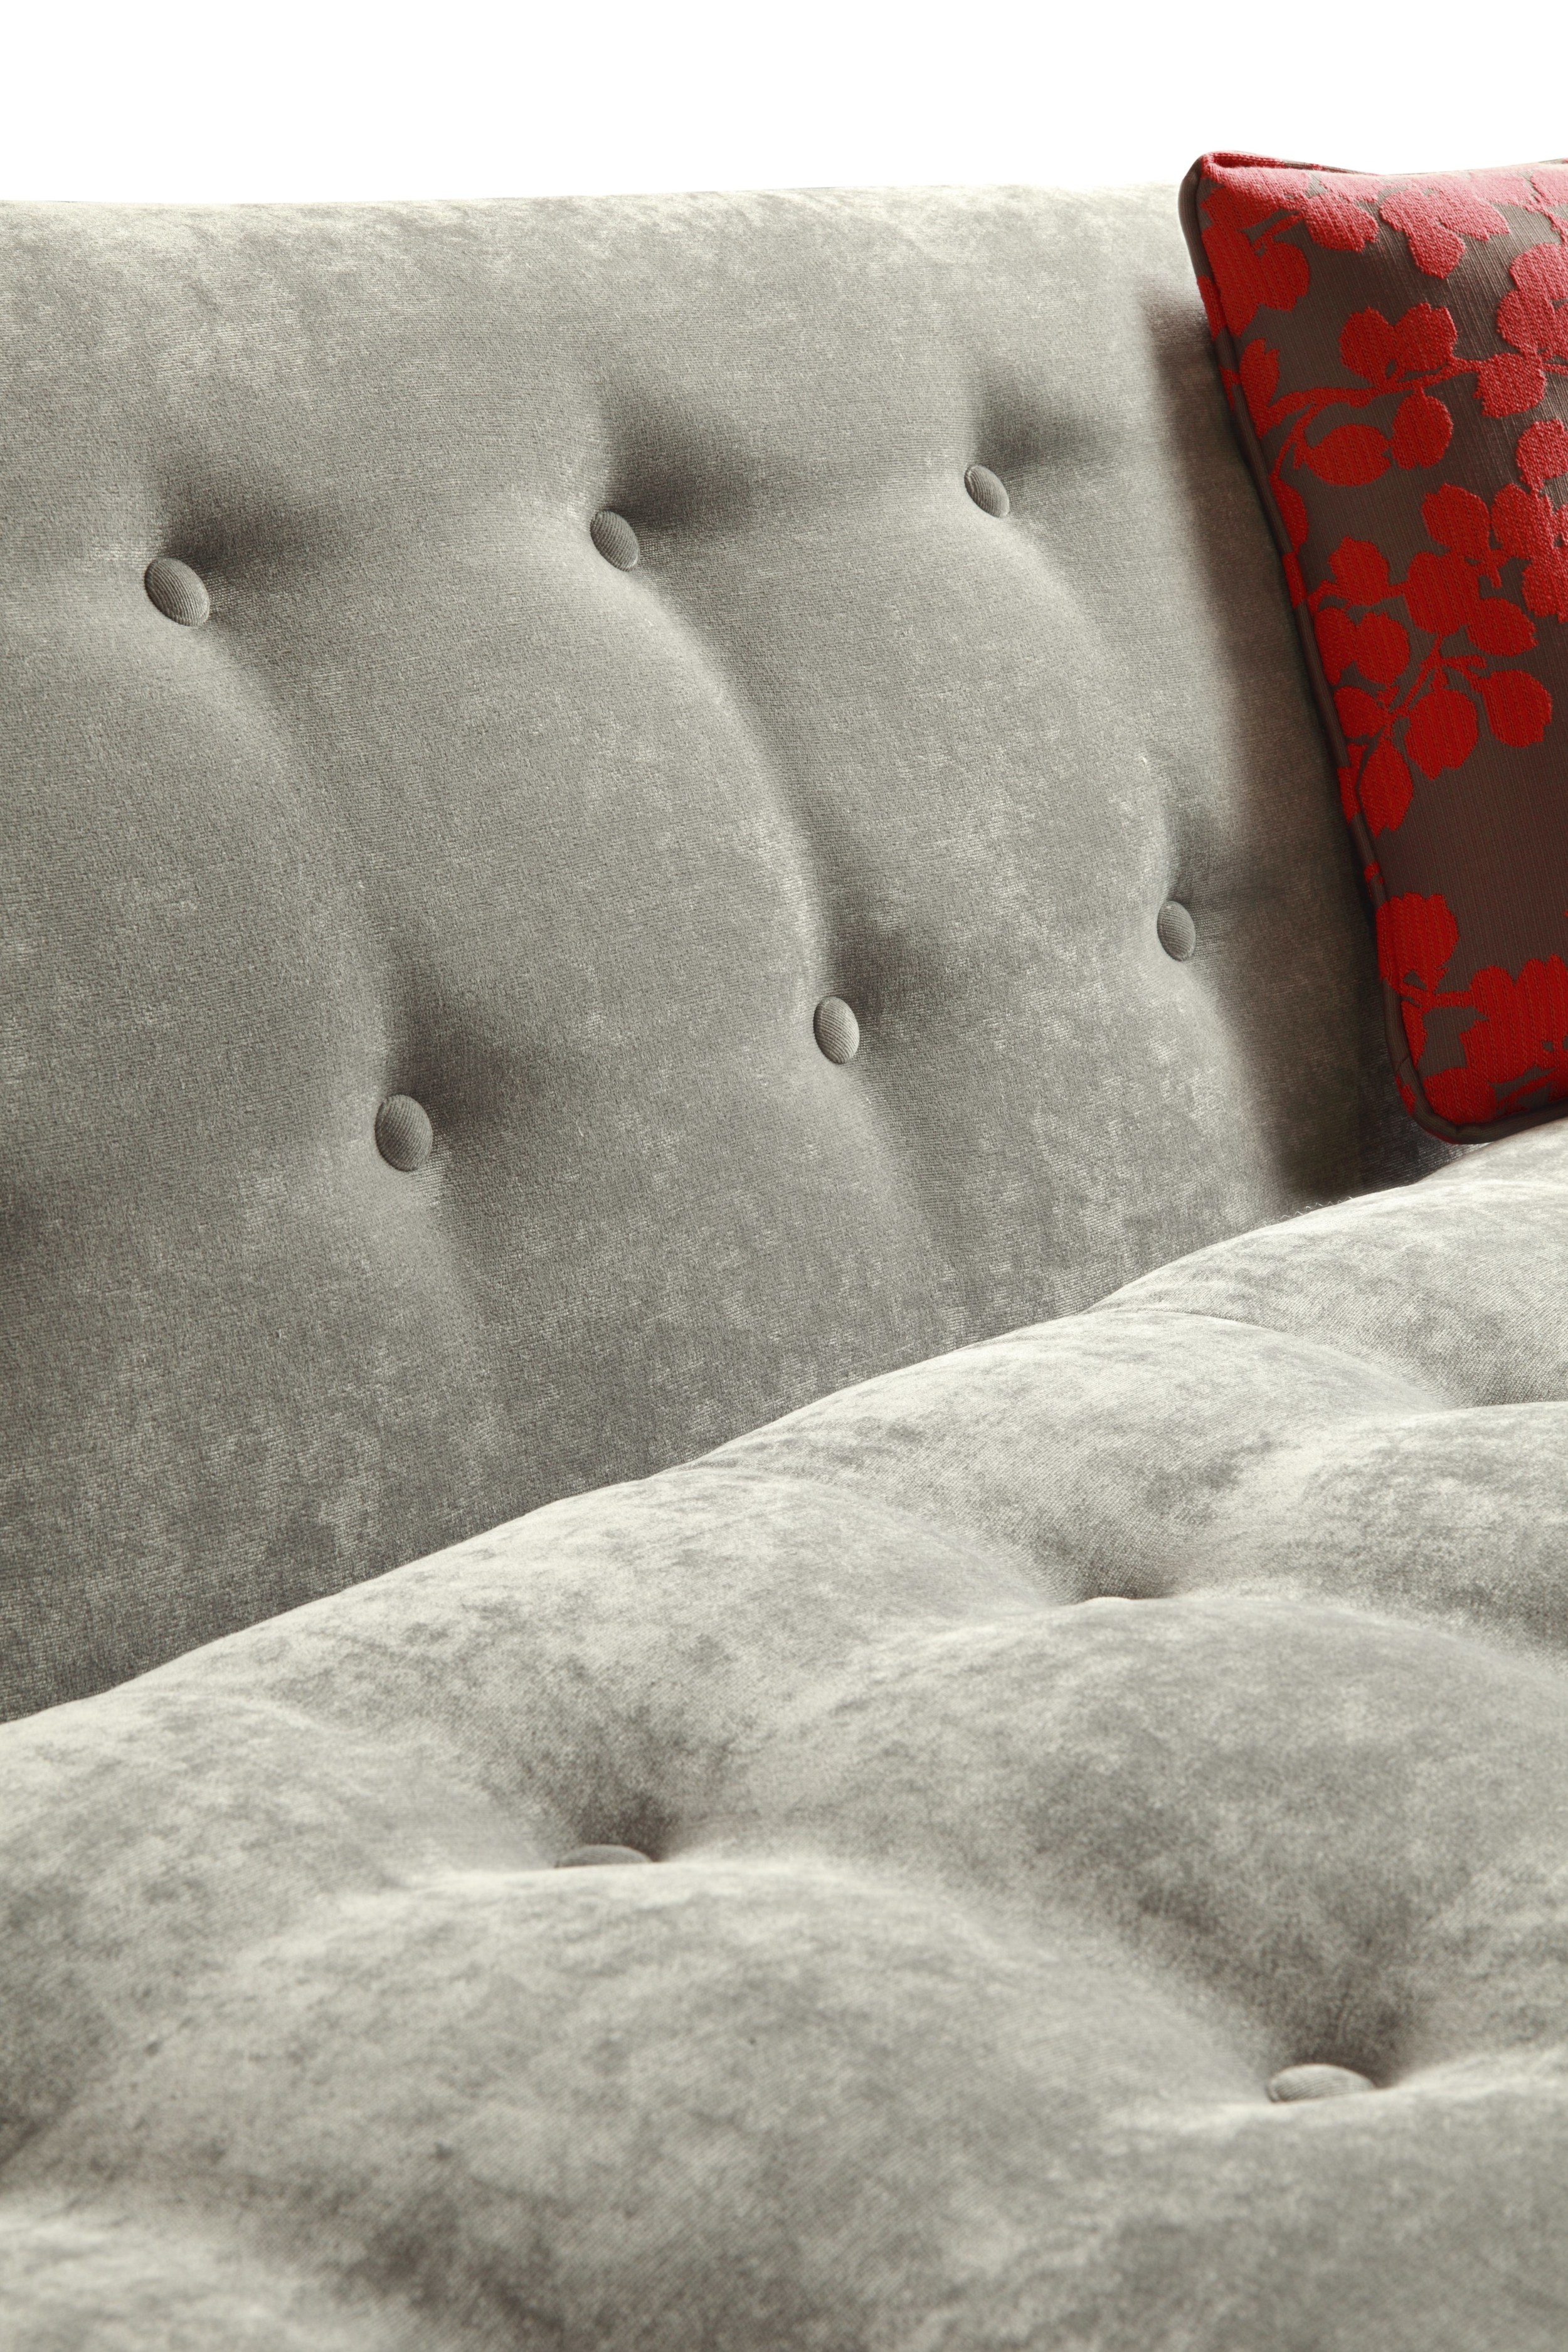 Sofa Detail.jpg